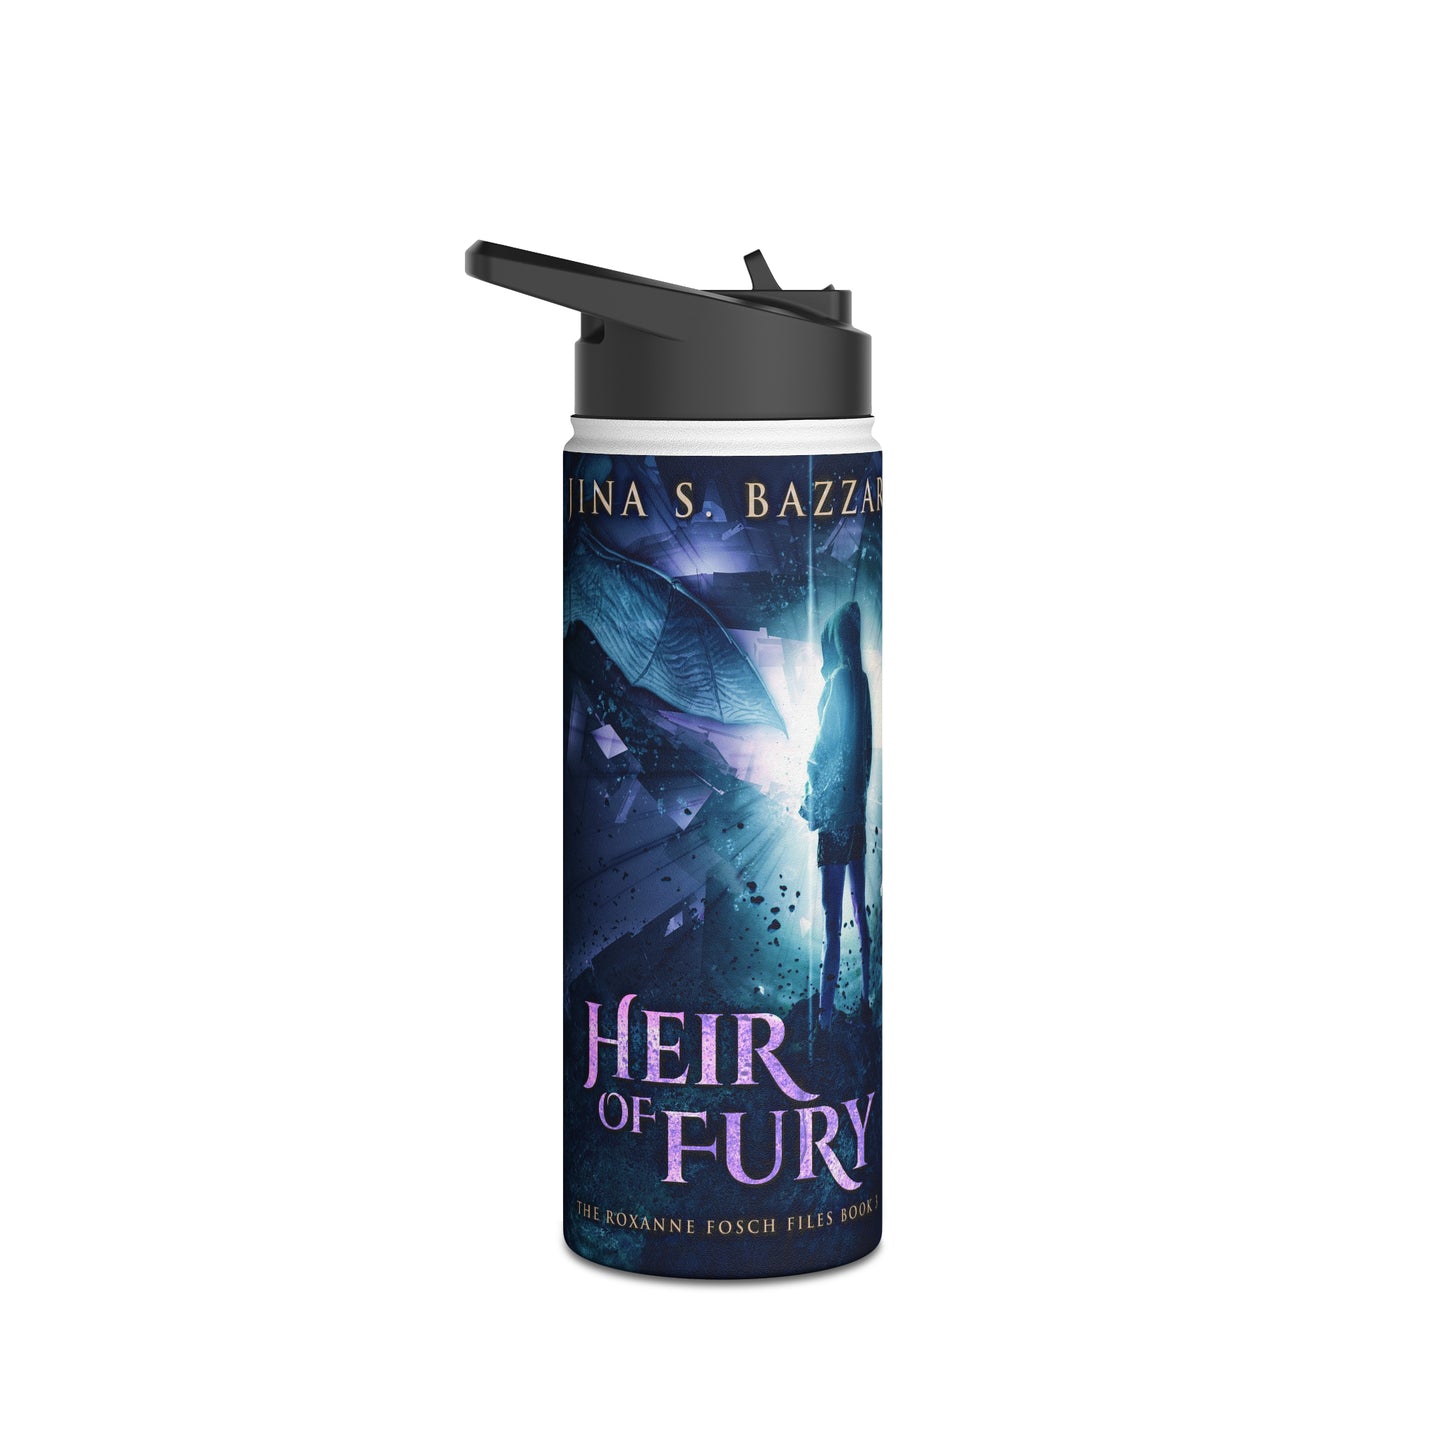 Heir of Fury - Stainless Steel Water Bottle